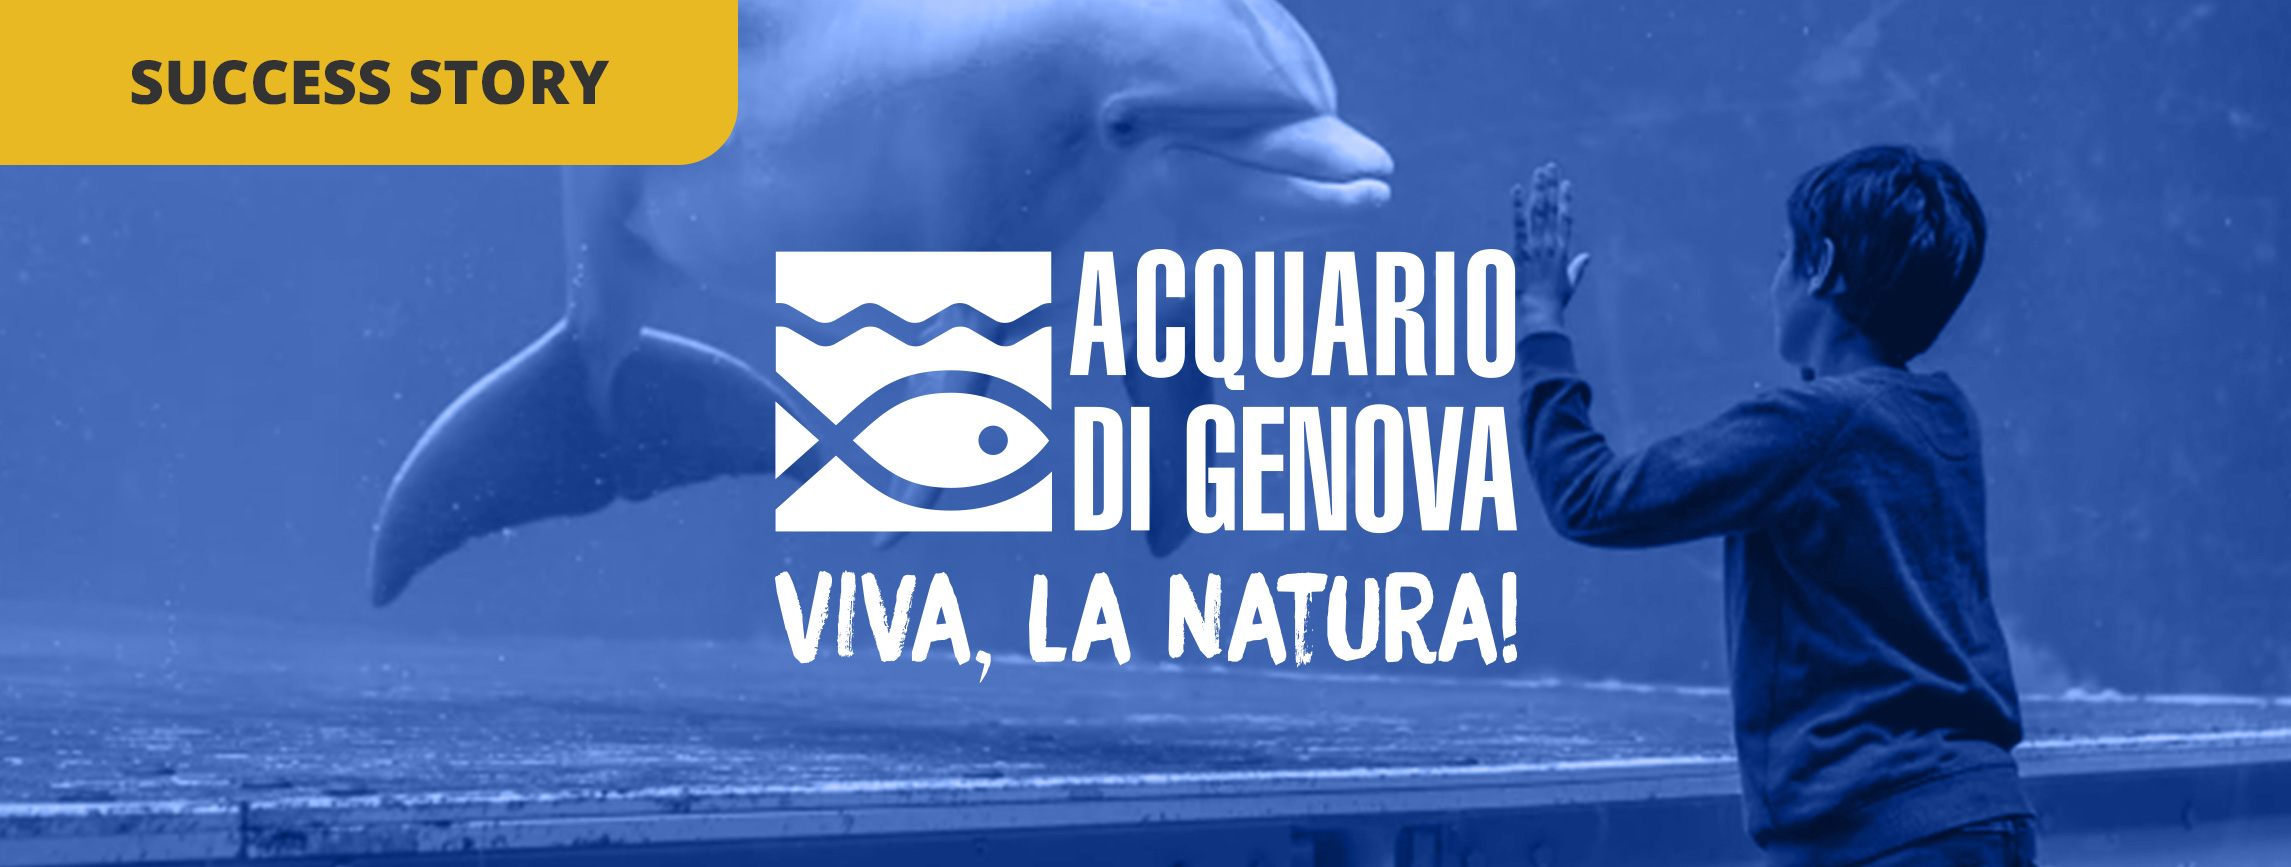 How Acquario di Genova became one of the World‘s Top 10 Aqua...